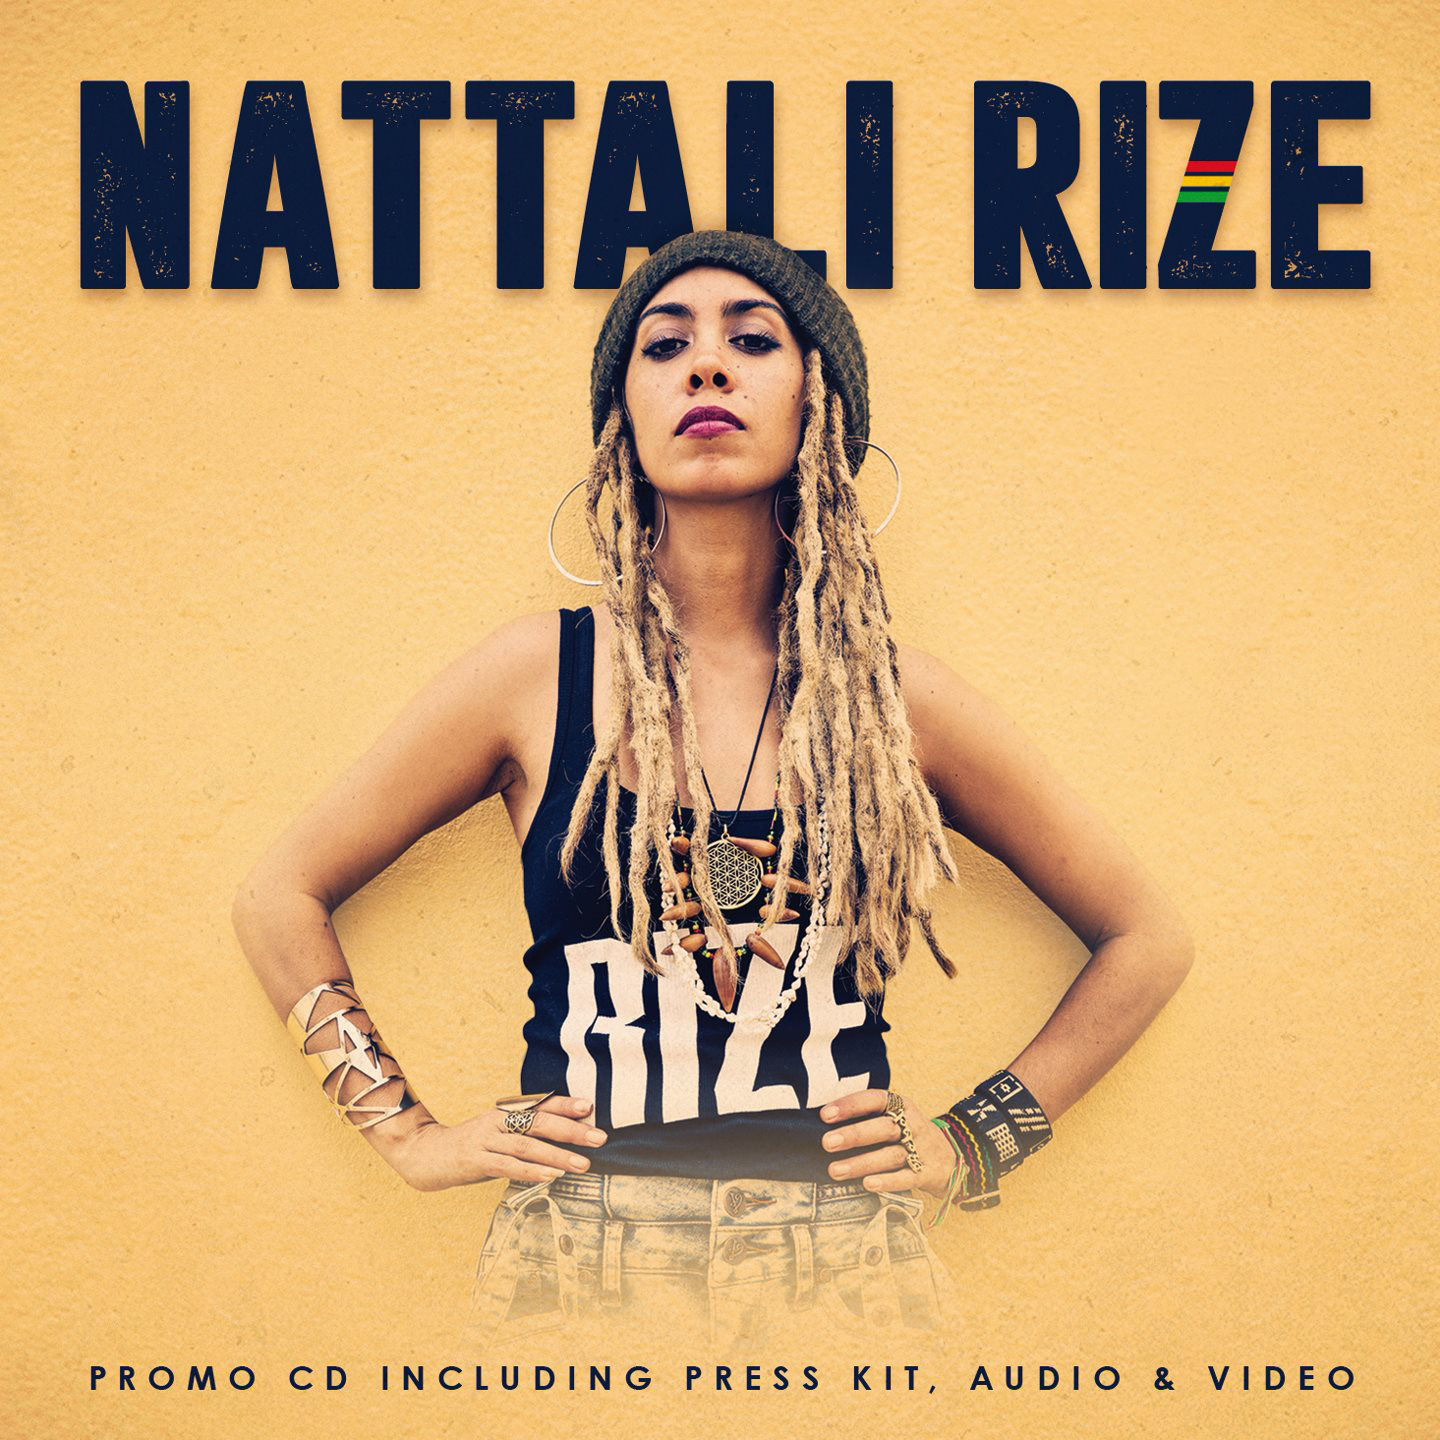 Cover du CD promo de Nattali Rize. Réalisé par Loseou